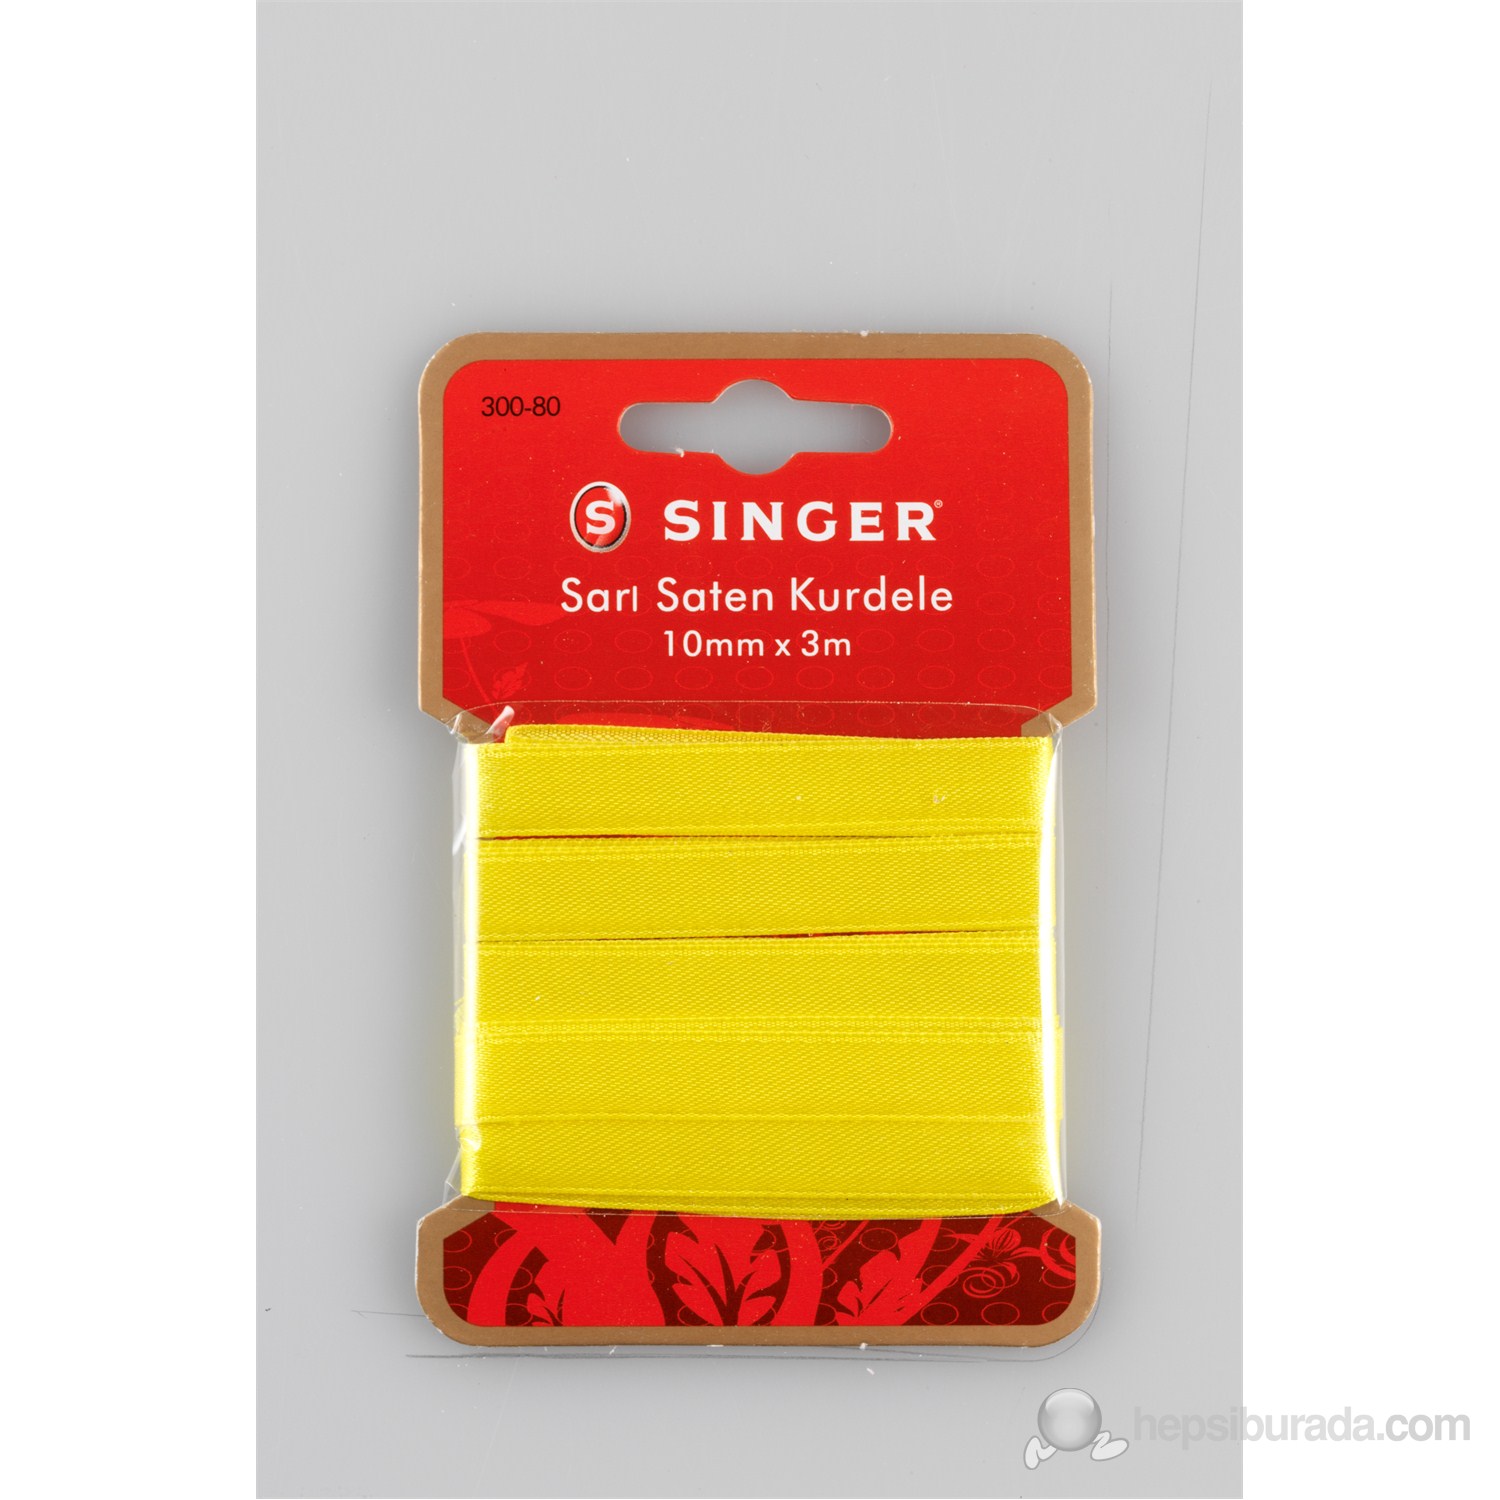 Singer 300-80 Sarı Saten Kurdele (10 mm x 3 m)